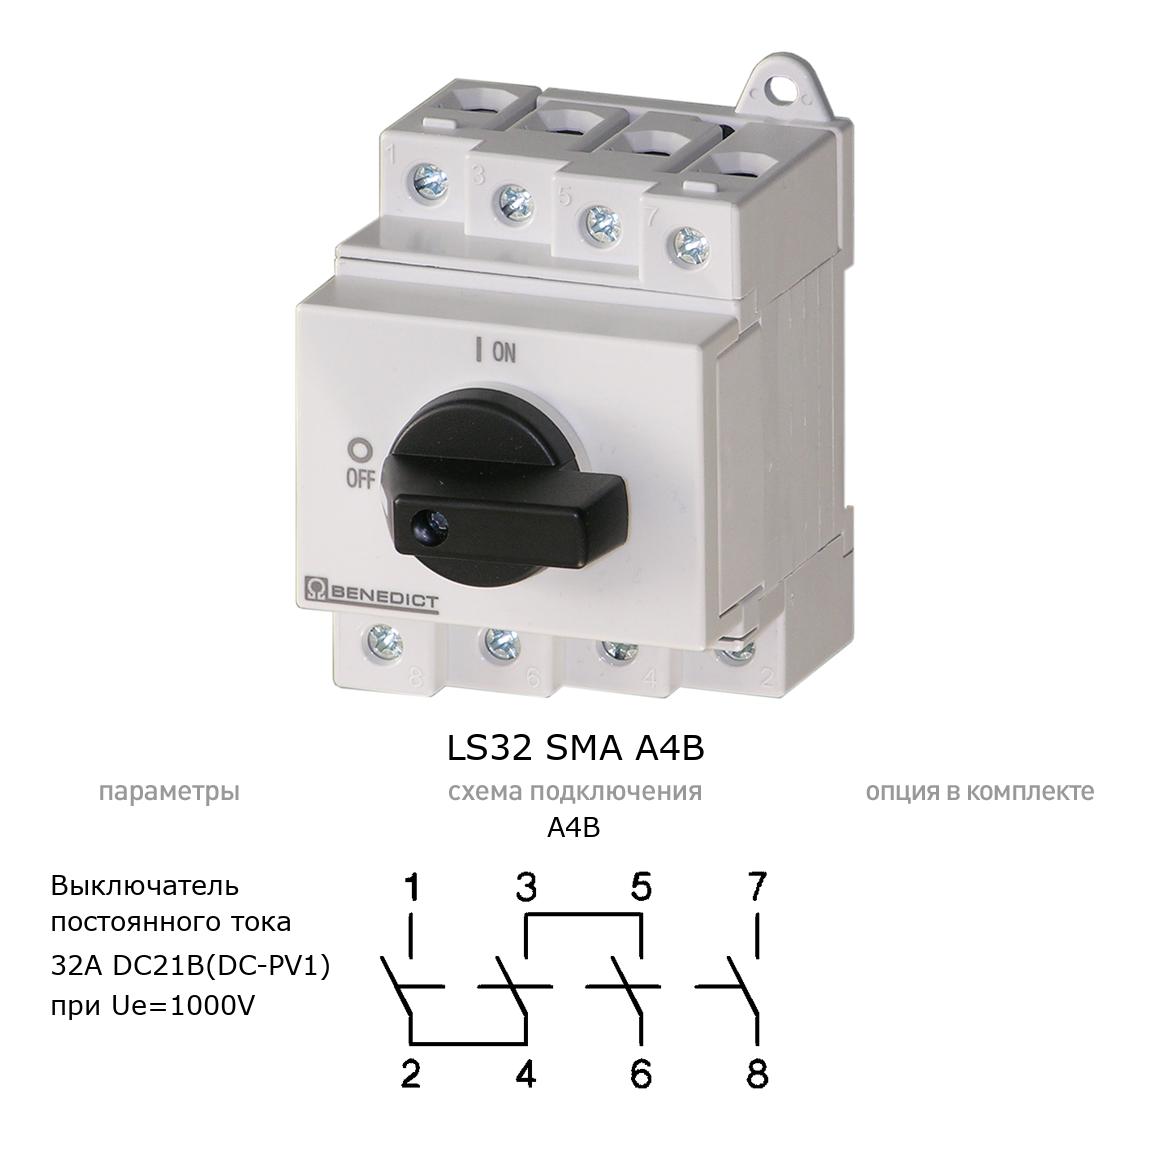 Кулачковый переключатель для постоянного тока (DC) LS32 SMA A4B BENEDICT